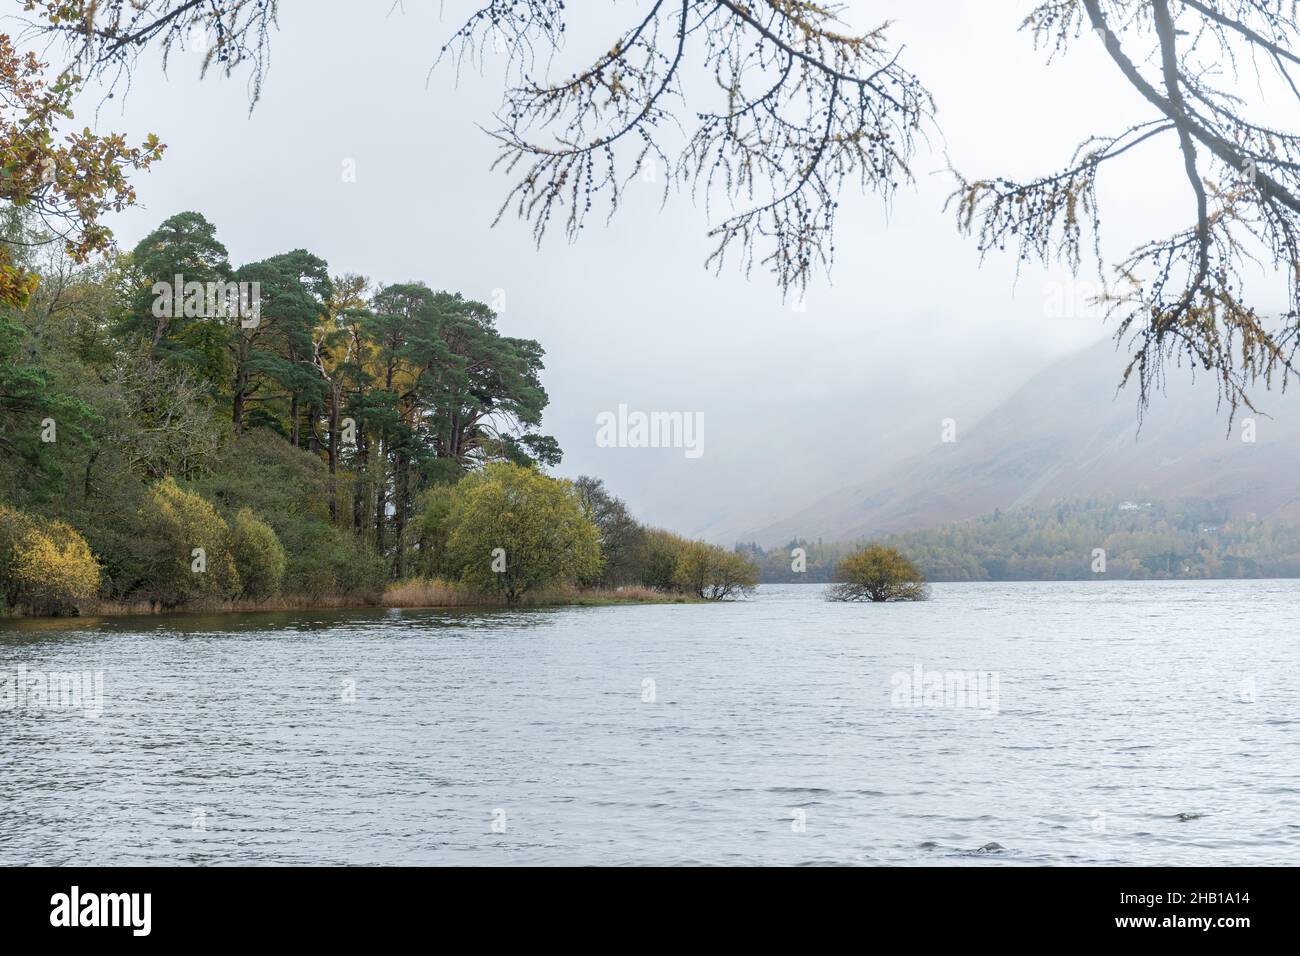 Vue de Derwentwater (Derwent Water) dans le Lake District, un jour de novembre brumeux avec des couleurs d'automne, Cumbria, Angleterre, Royaume-Uni Banque D'Images